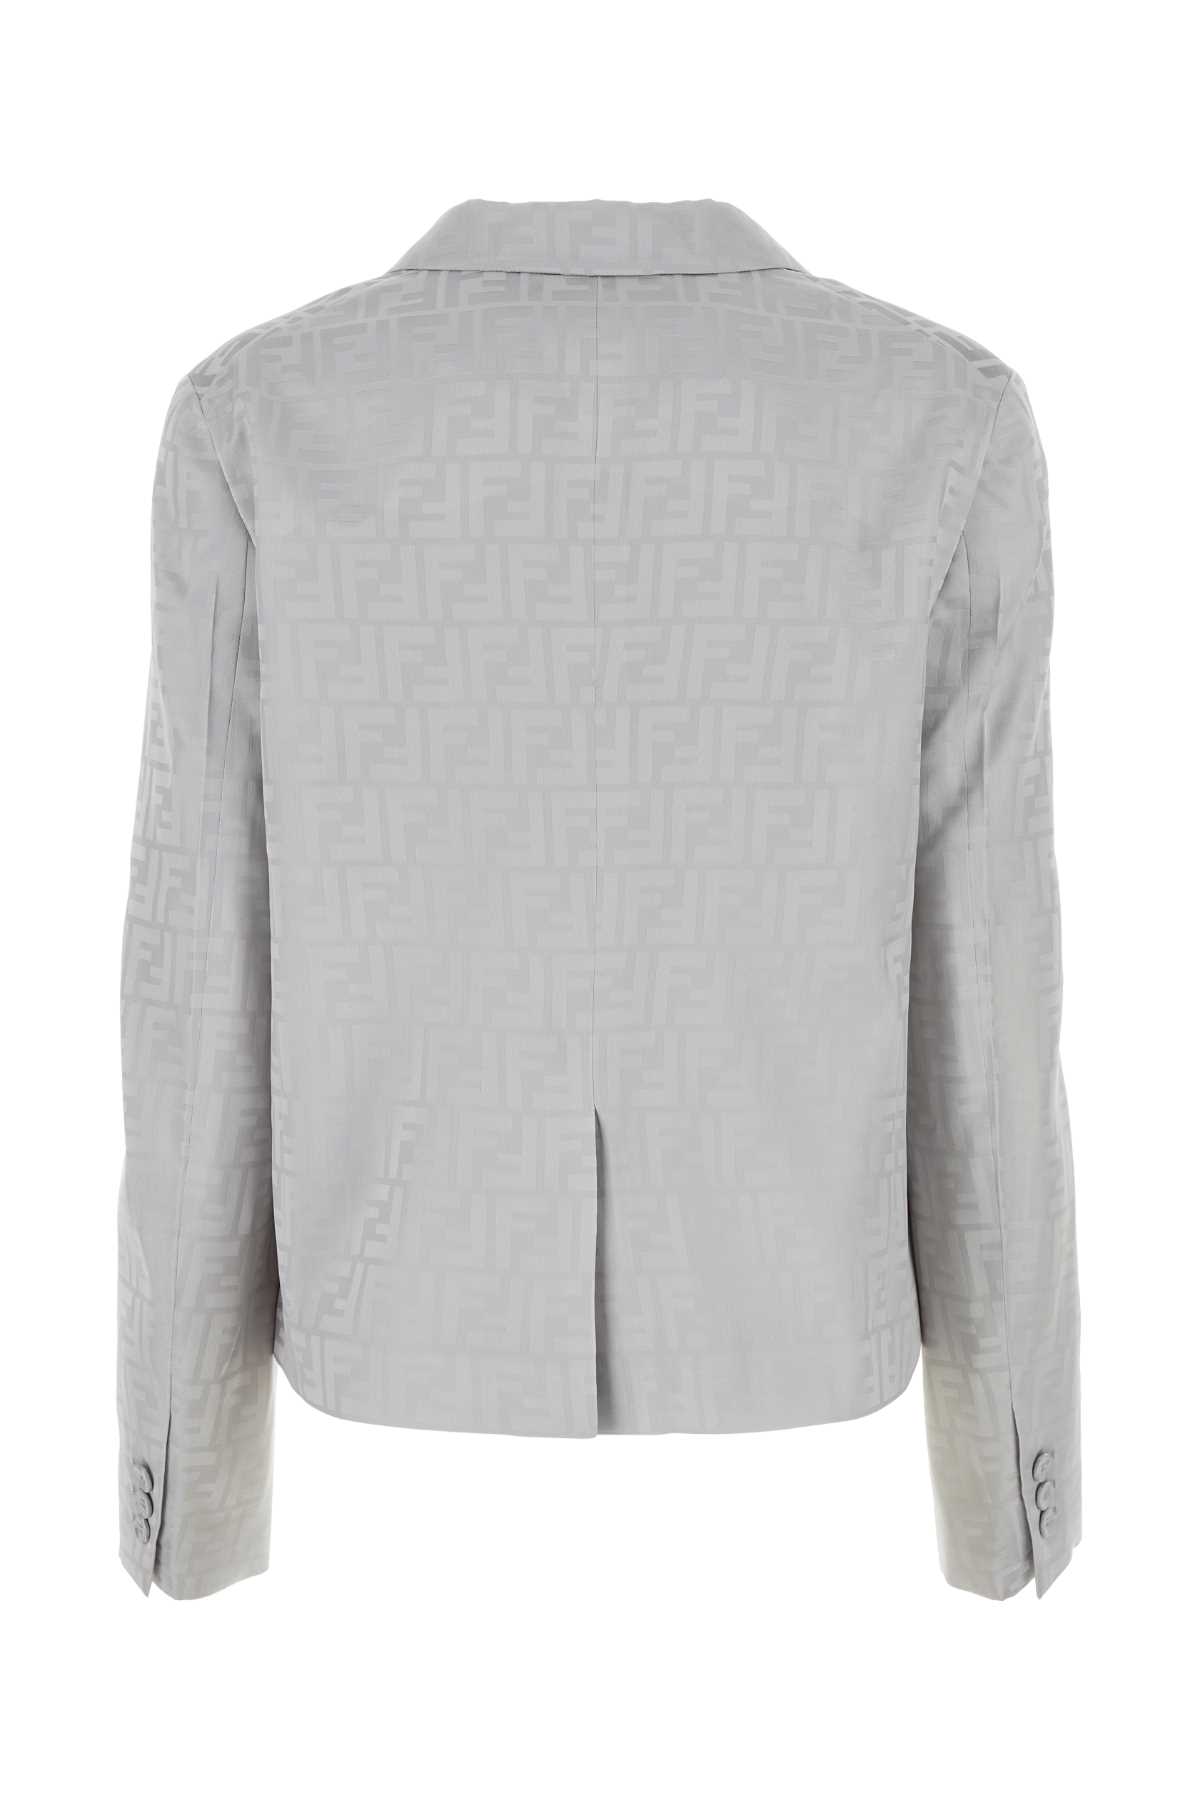 Fendi Embroidered Satin Blazer In Grey